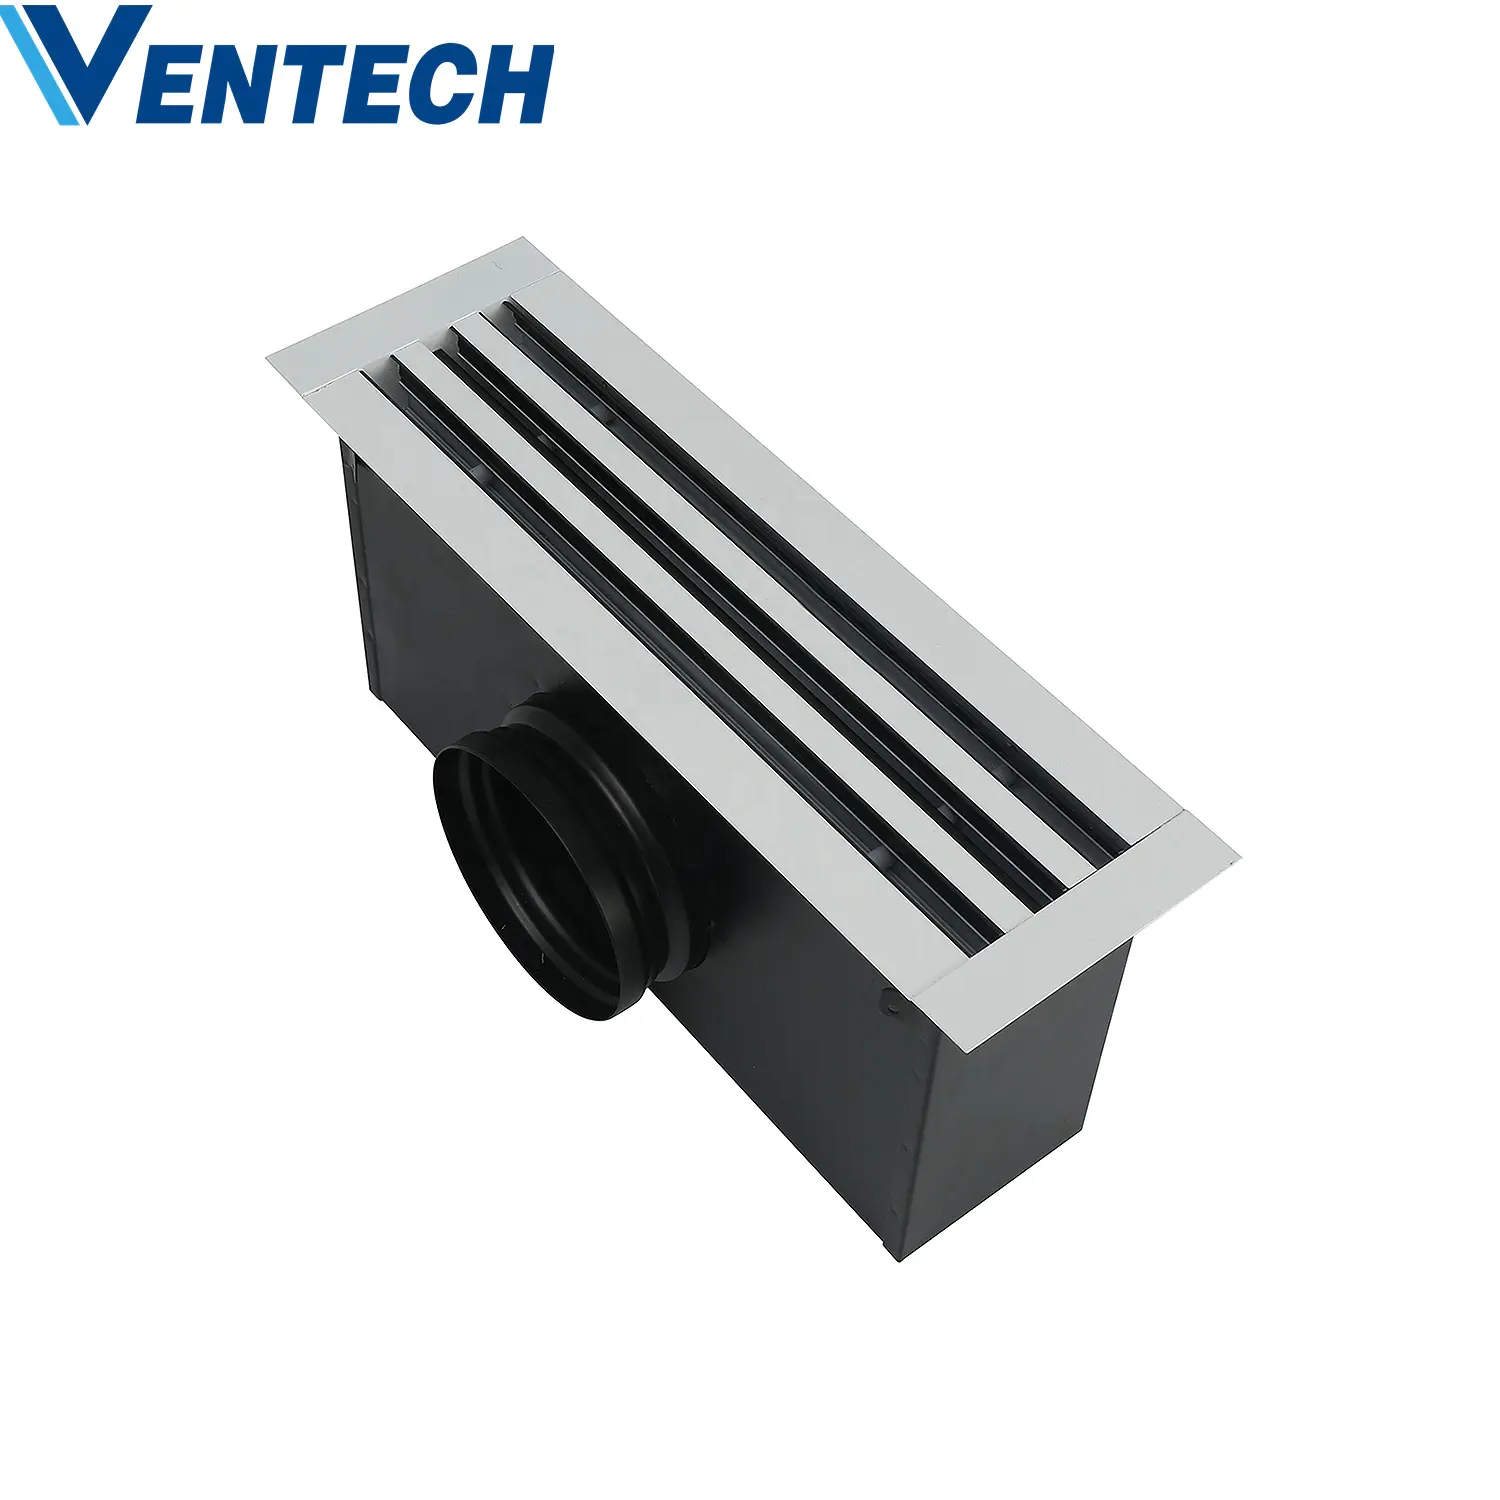 Hvac fresh air ceiling plenum box sizing supply air ventilation linear slot diffuser